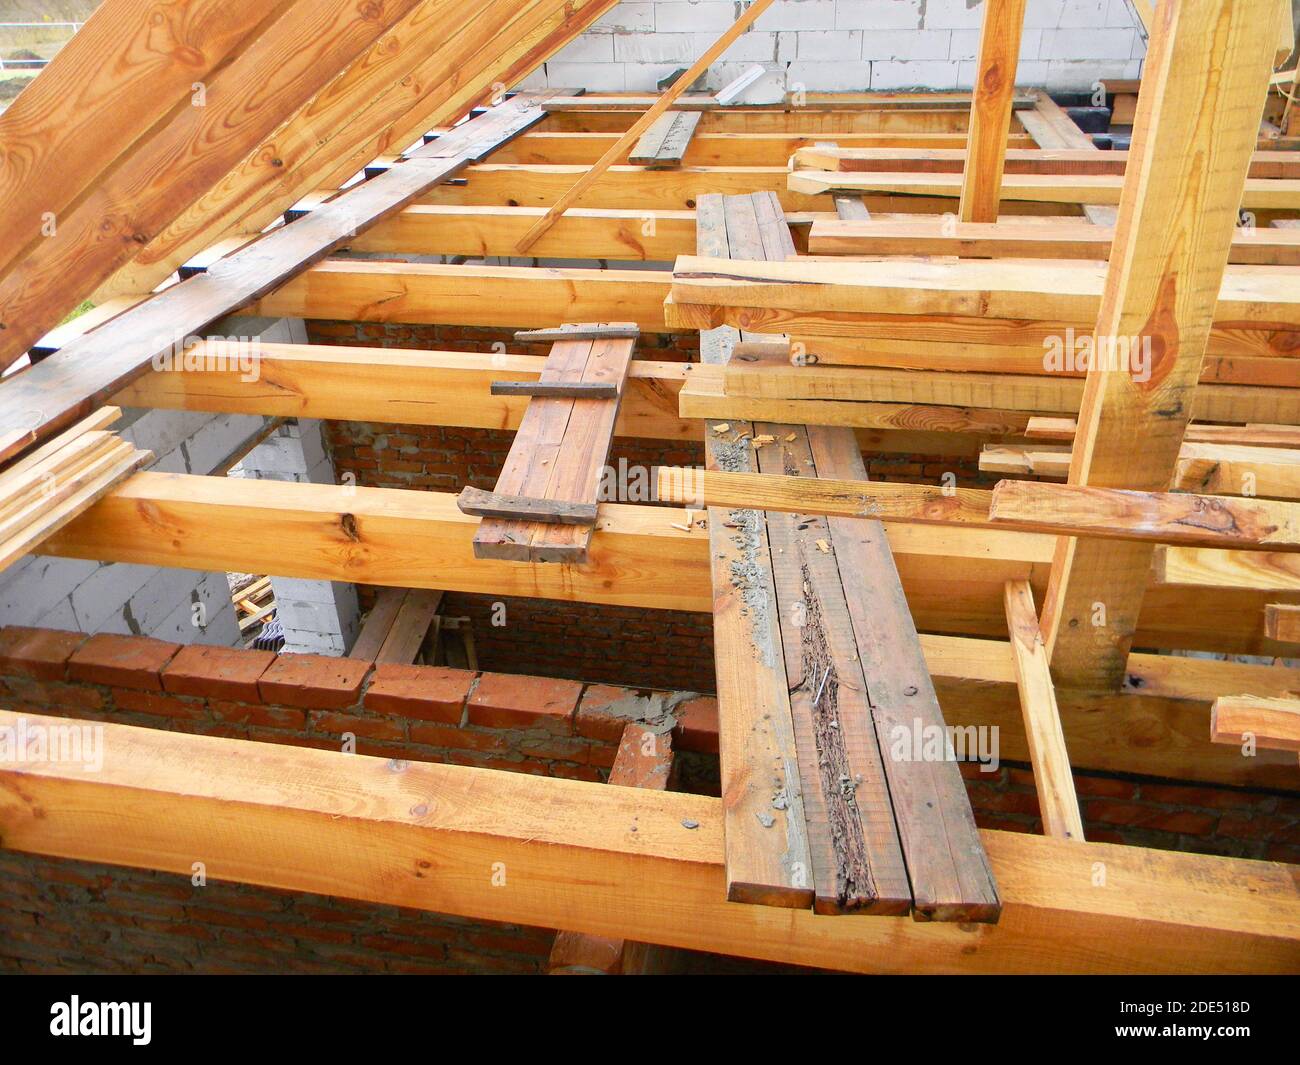 Unvollendete Dachdachkonstruktion mit Dachstühlen, Holzbalken, Dachrinnen, Holz. Haus Dach Holzrahmen Konstruktion. Stockfoto